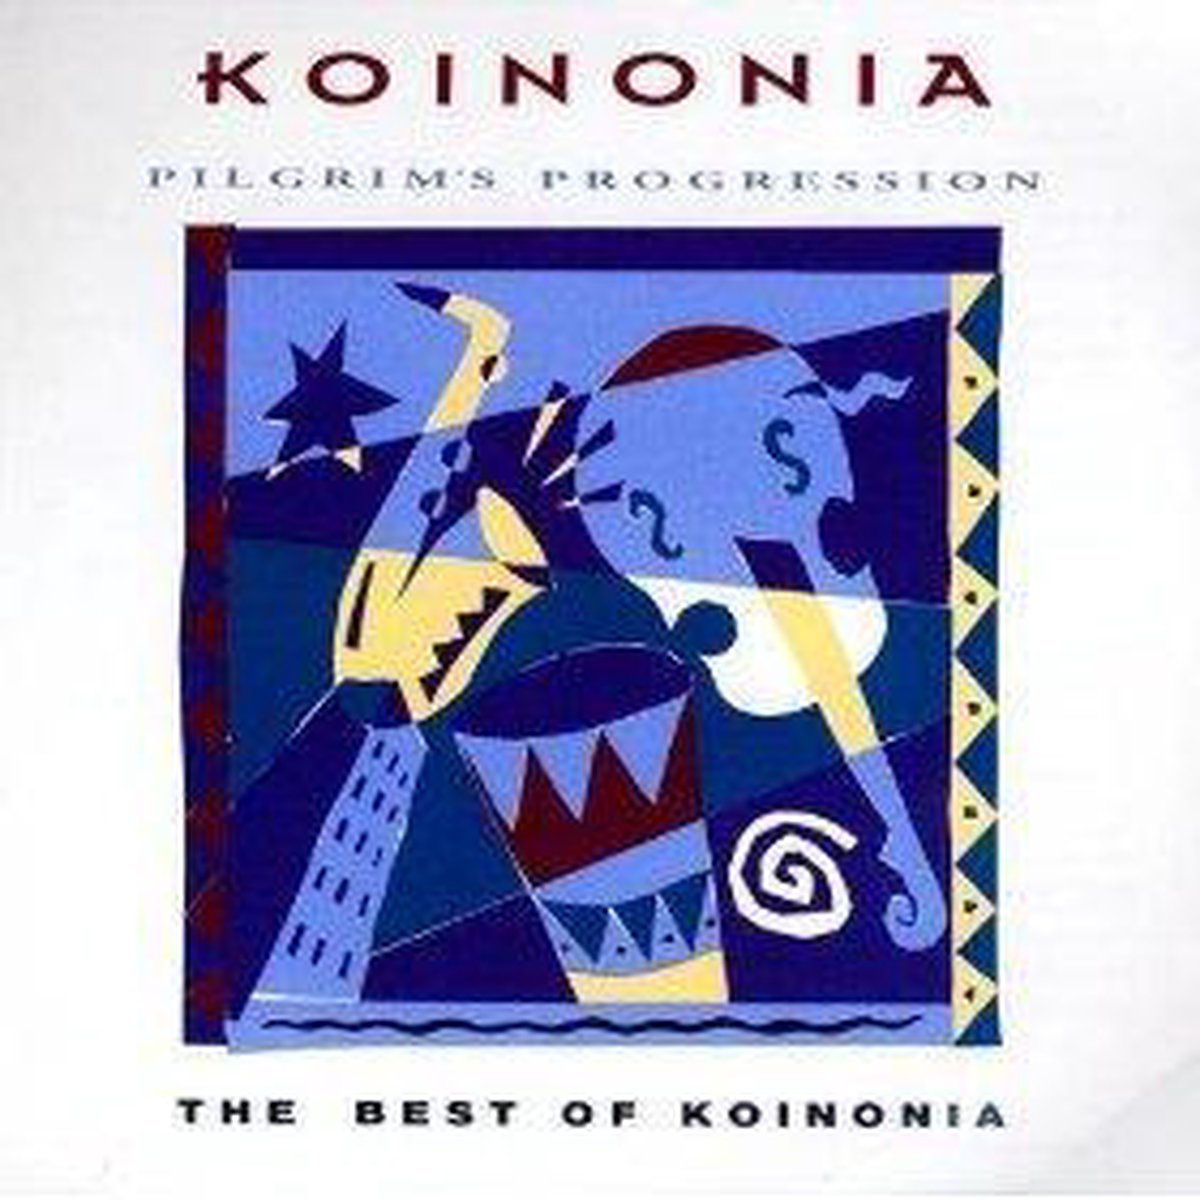 Best Of Koinonia Pilgrims Progression Koinonia Cd Album Muziek